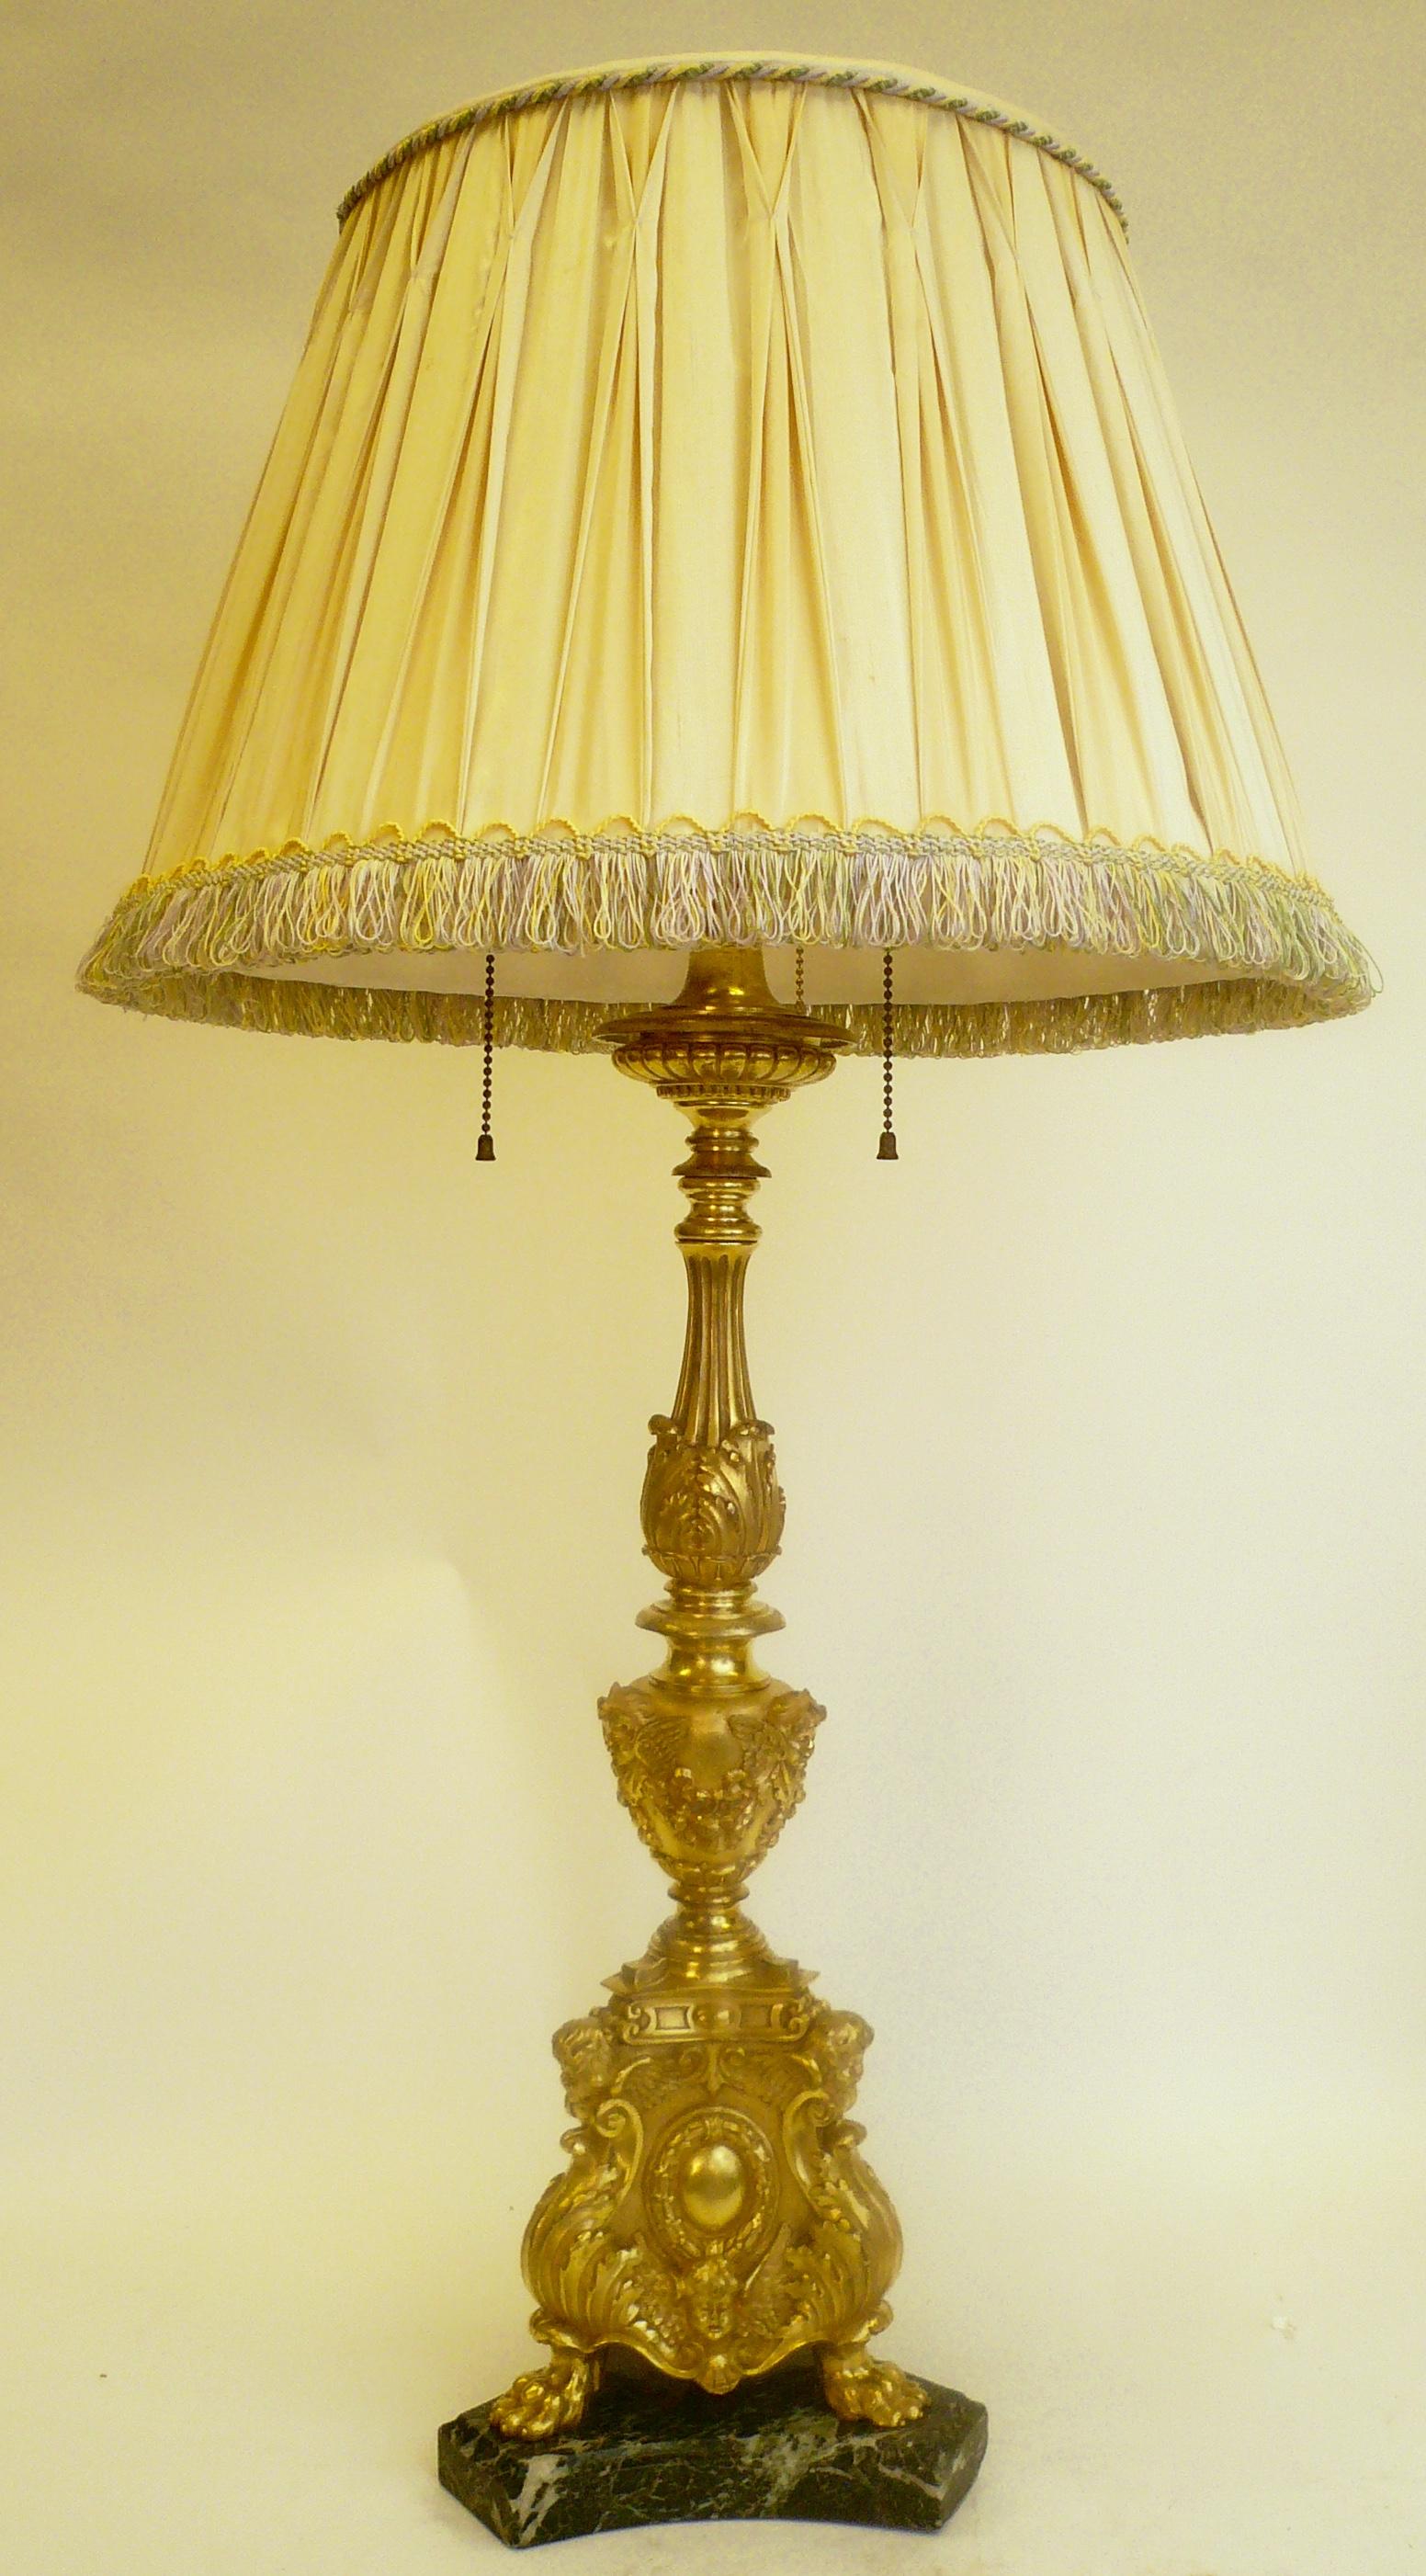 Cette lampe figurative en bronze doré finement coulé de Caldwell présente des feuilles d'acanthe, des putti ailés, des guirlandes réticulées et d'autres motifs classiques sur une base en marbre.